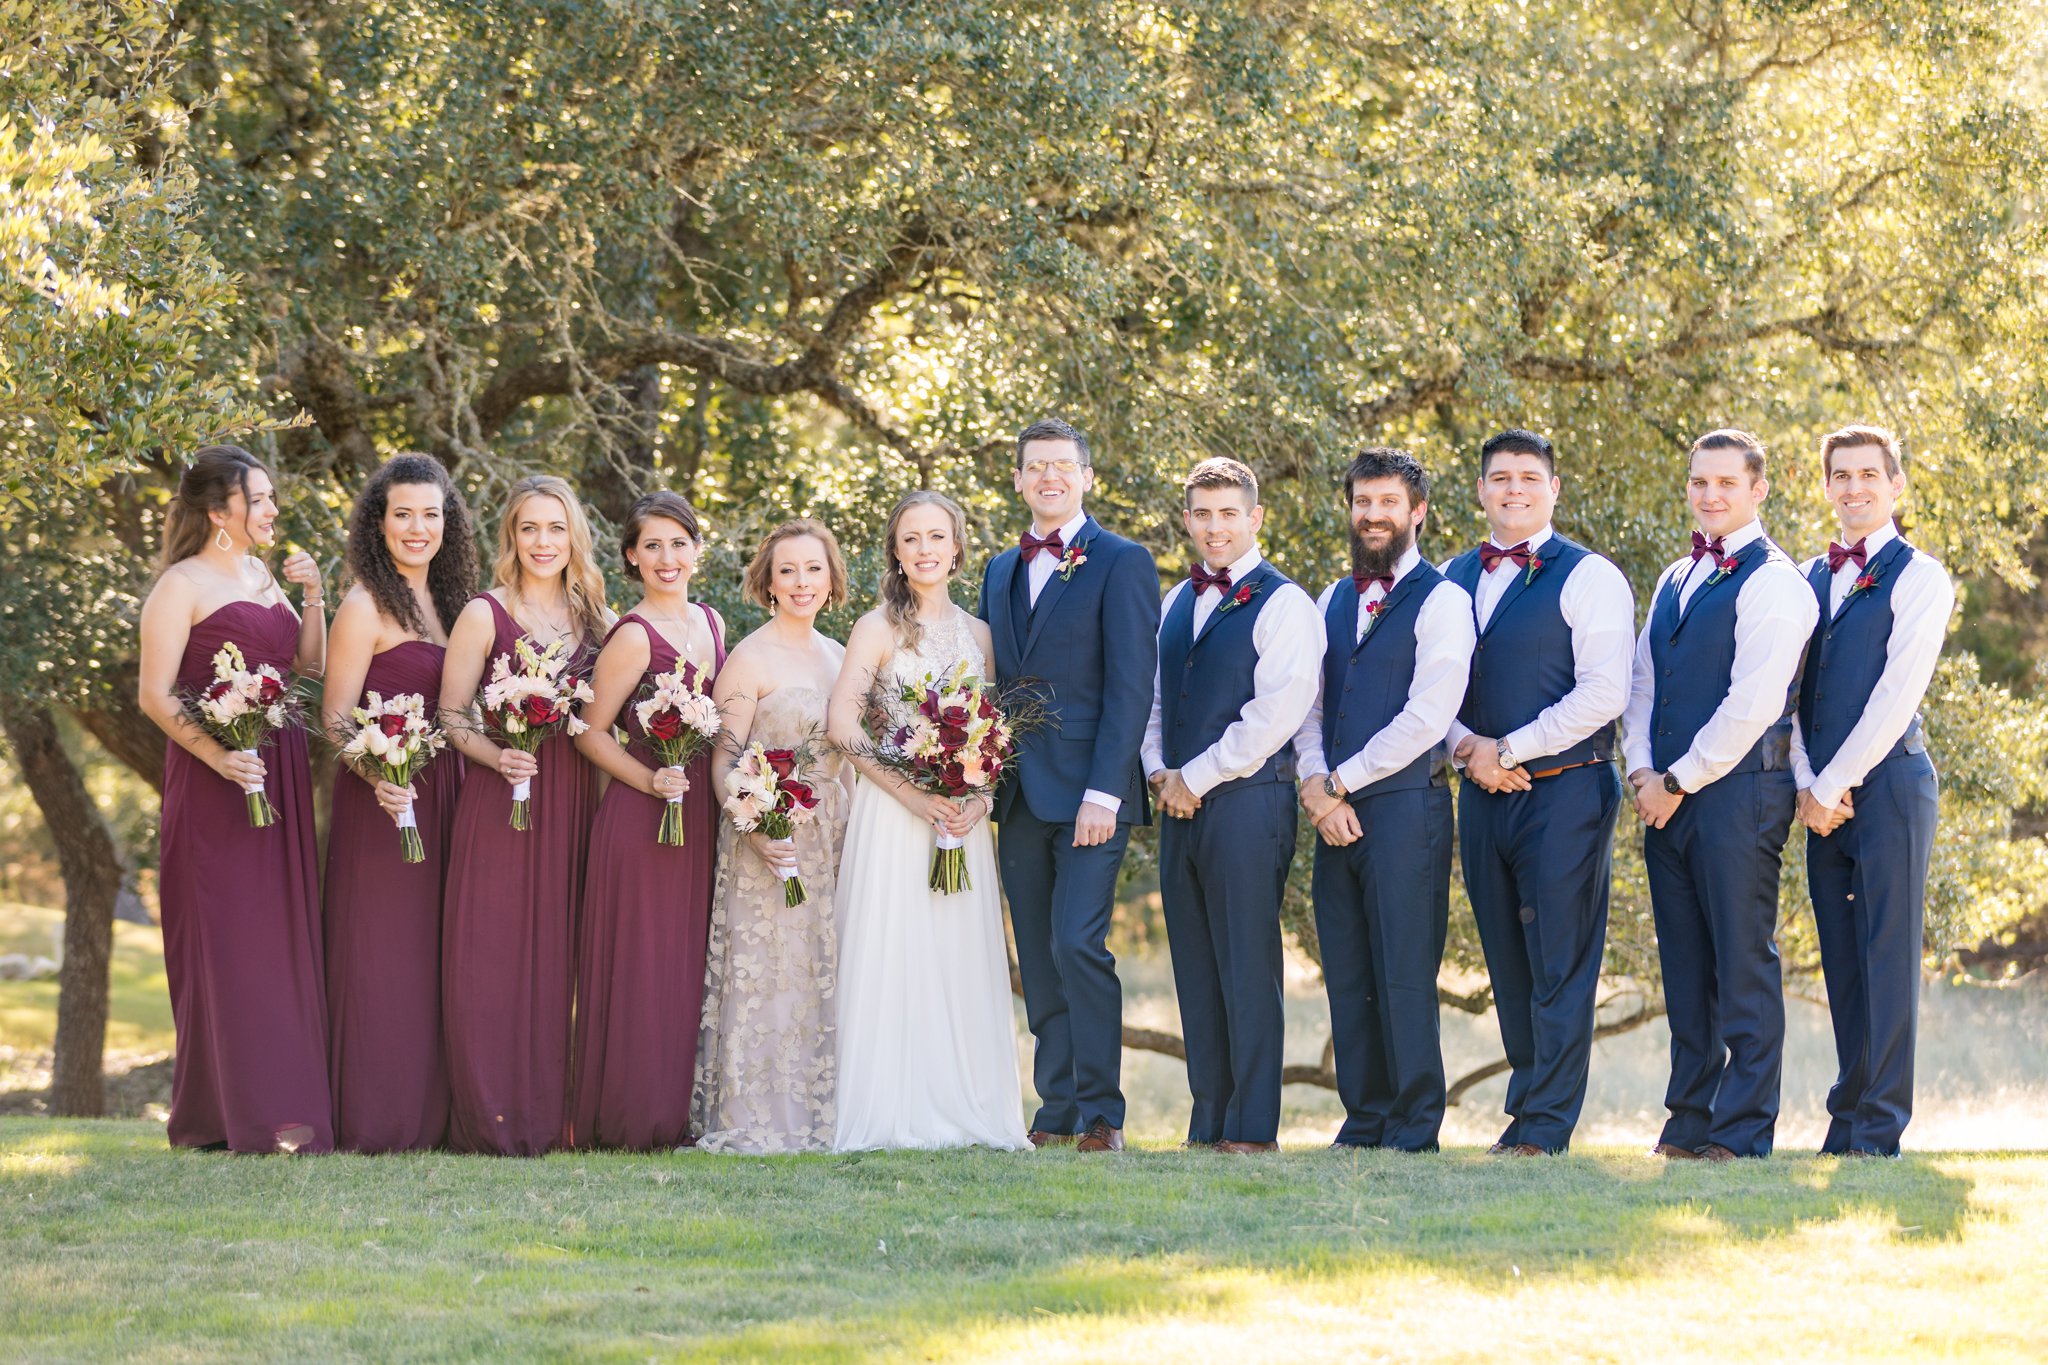 A Burgundy and Navy Wedding at the Milestone Boerne in Boerne, TX by Dawn Elizabeth Studios, Boerne Wedding Photographer